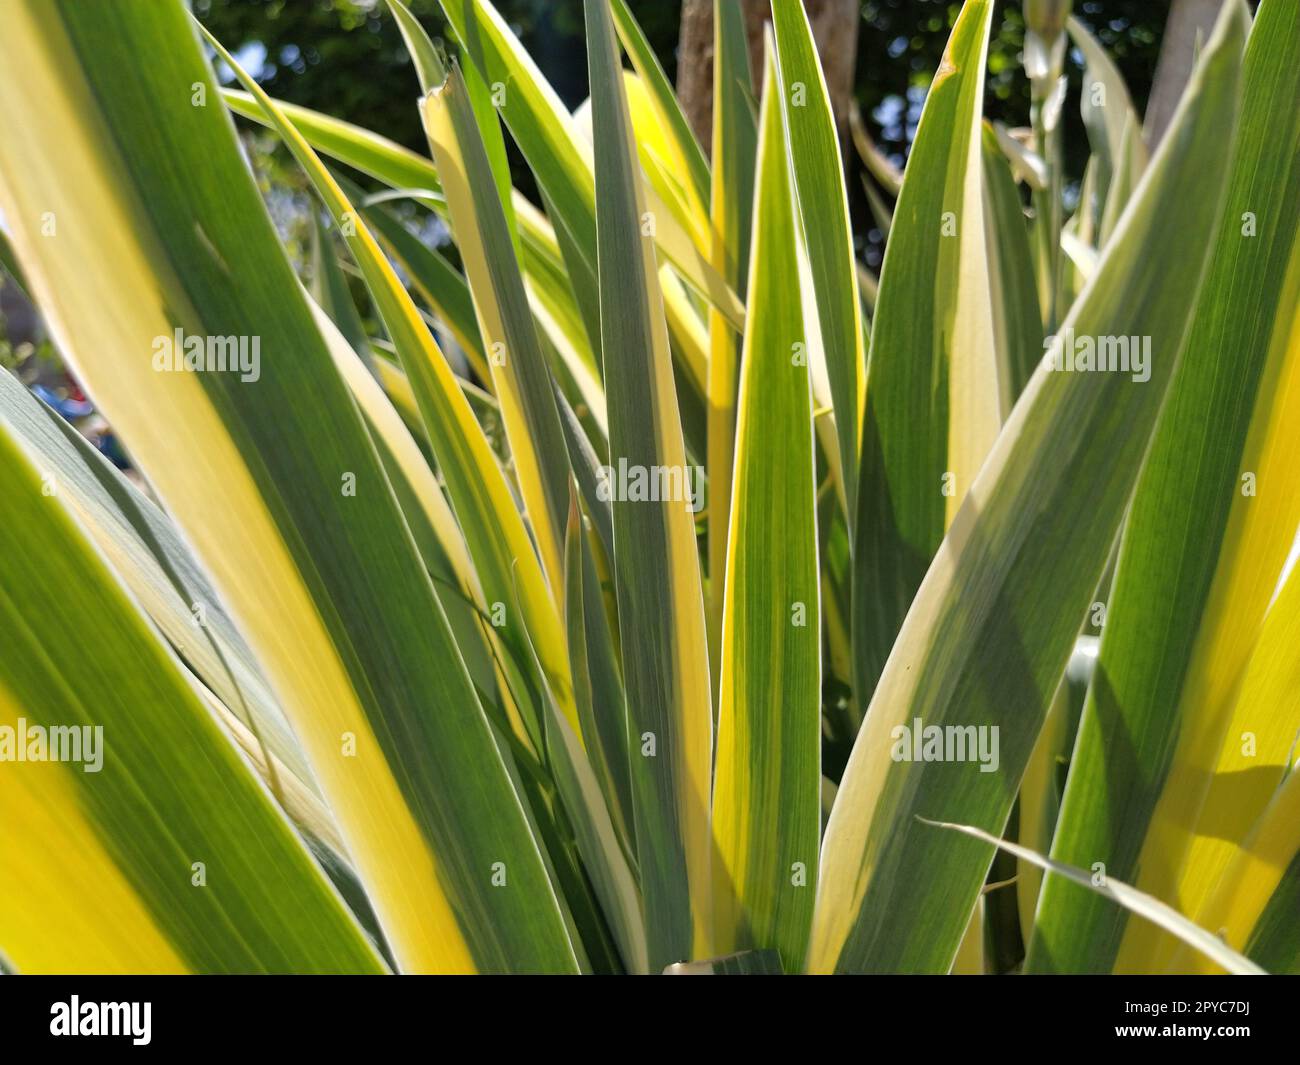 Cierre de hojas rayadas de color amarillo-verde. Iris en el jardín. Género de plantas de rizoma perennes de la familia Iris. Hojas de rayas largas verdes amarillas. Fondo floral. Jardinería. Foto de stock